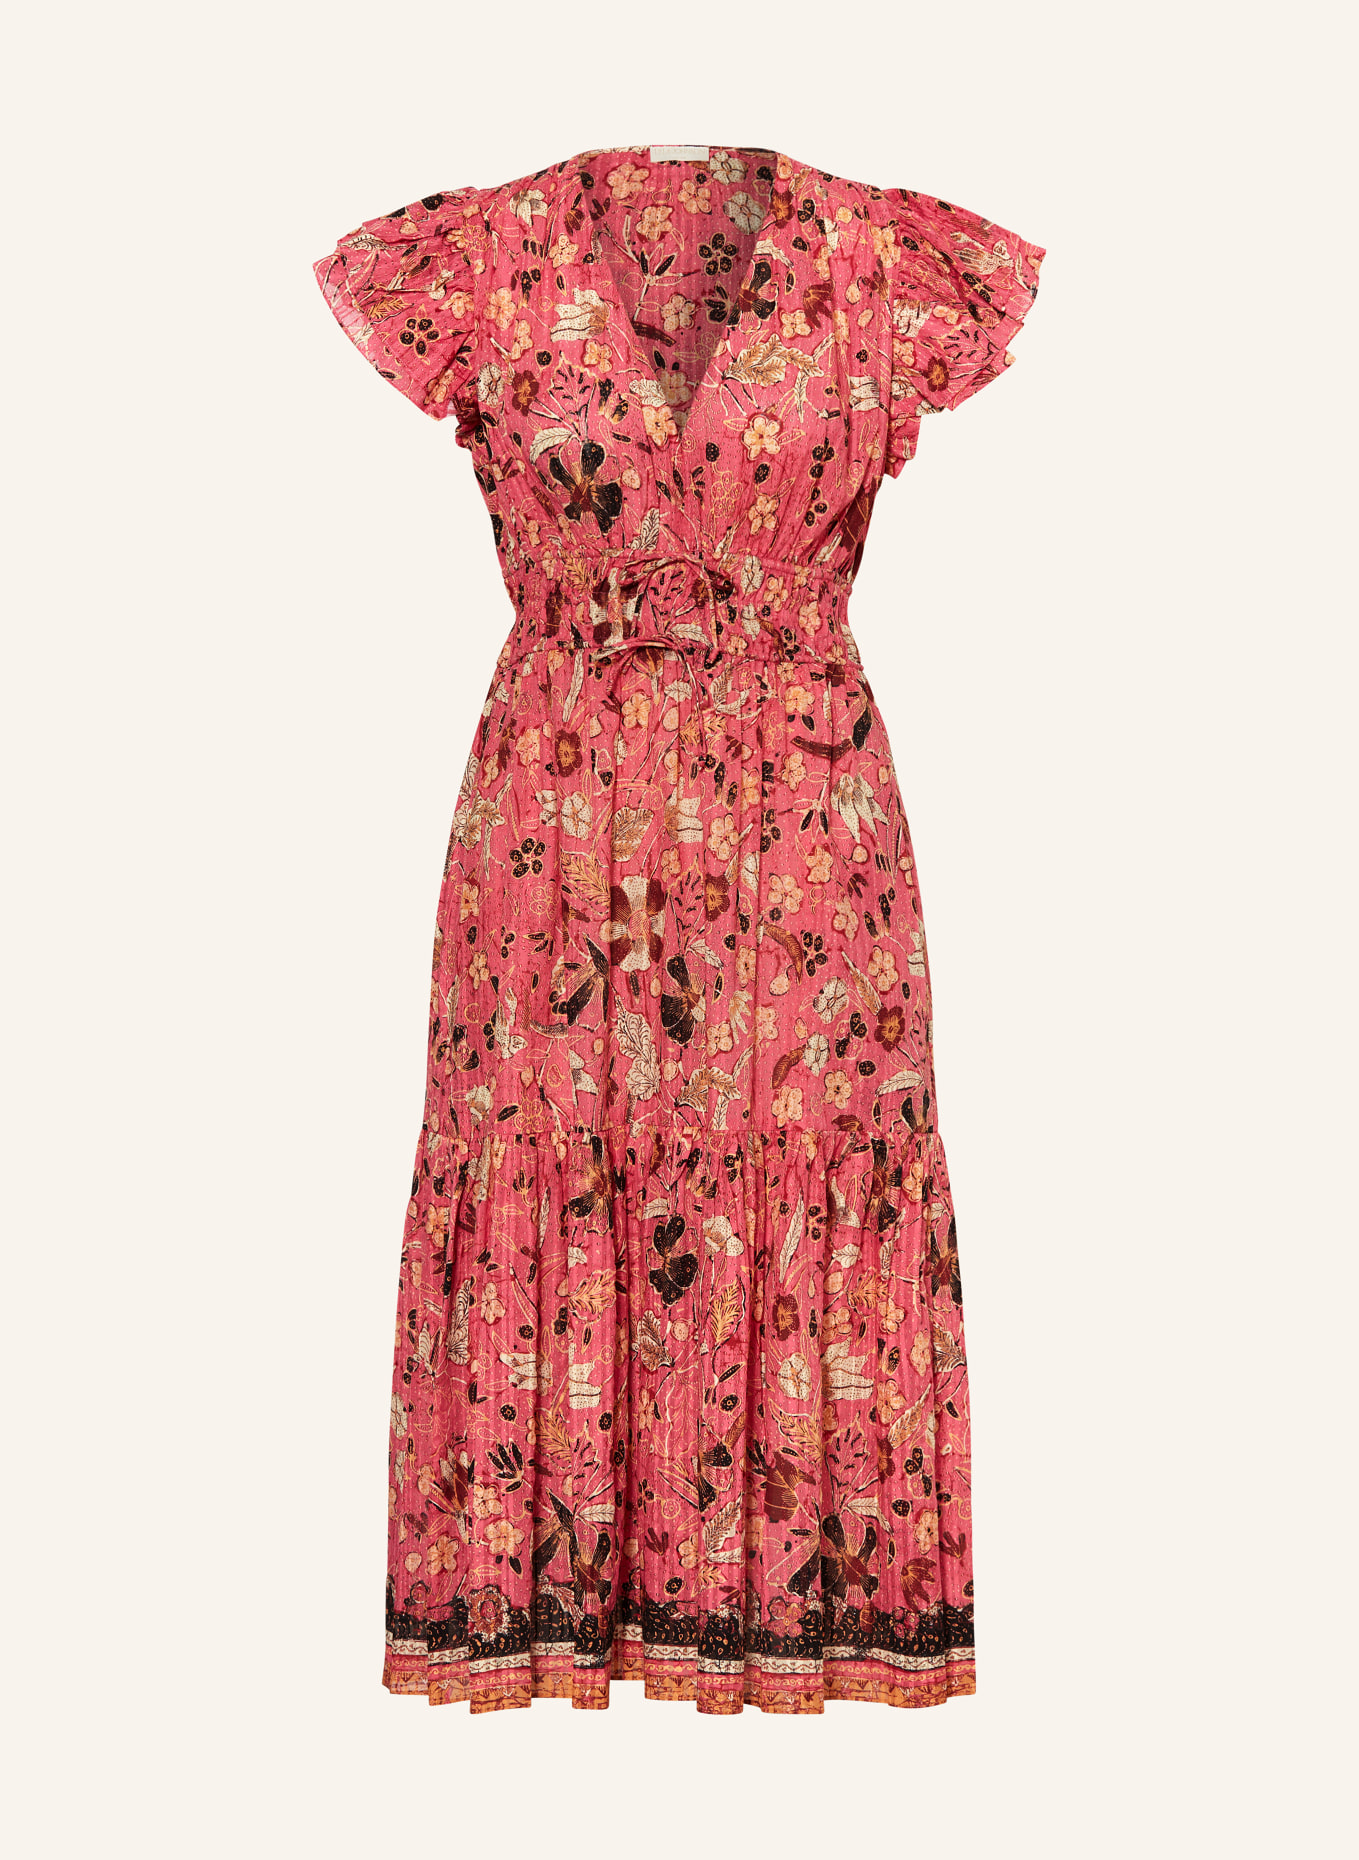 ULLA JOHNSON Kleid ANGELICA mit Volants, Farbe: PINK/ DUNKELROT/ SCHWARZ (Bild 1)